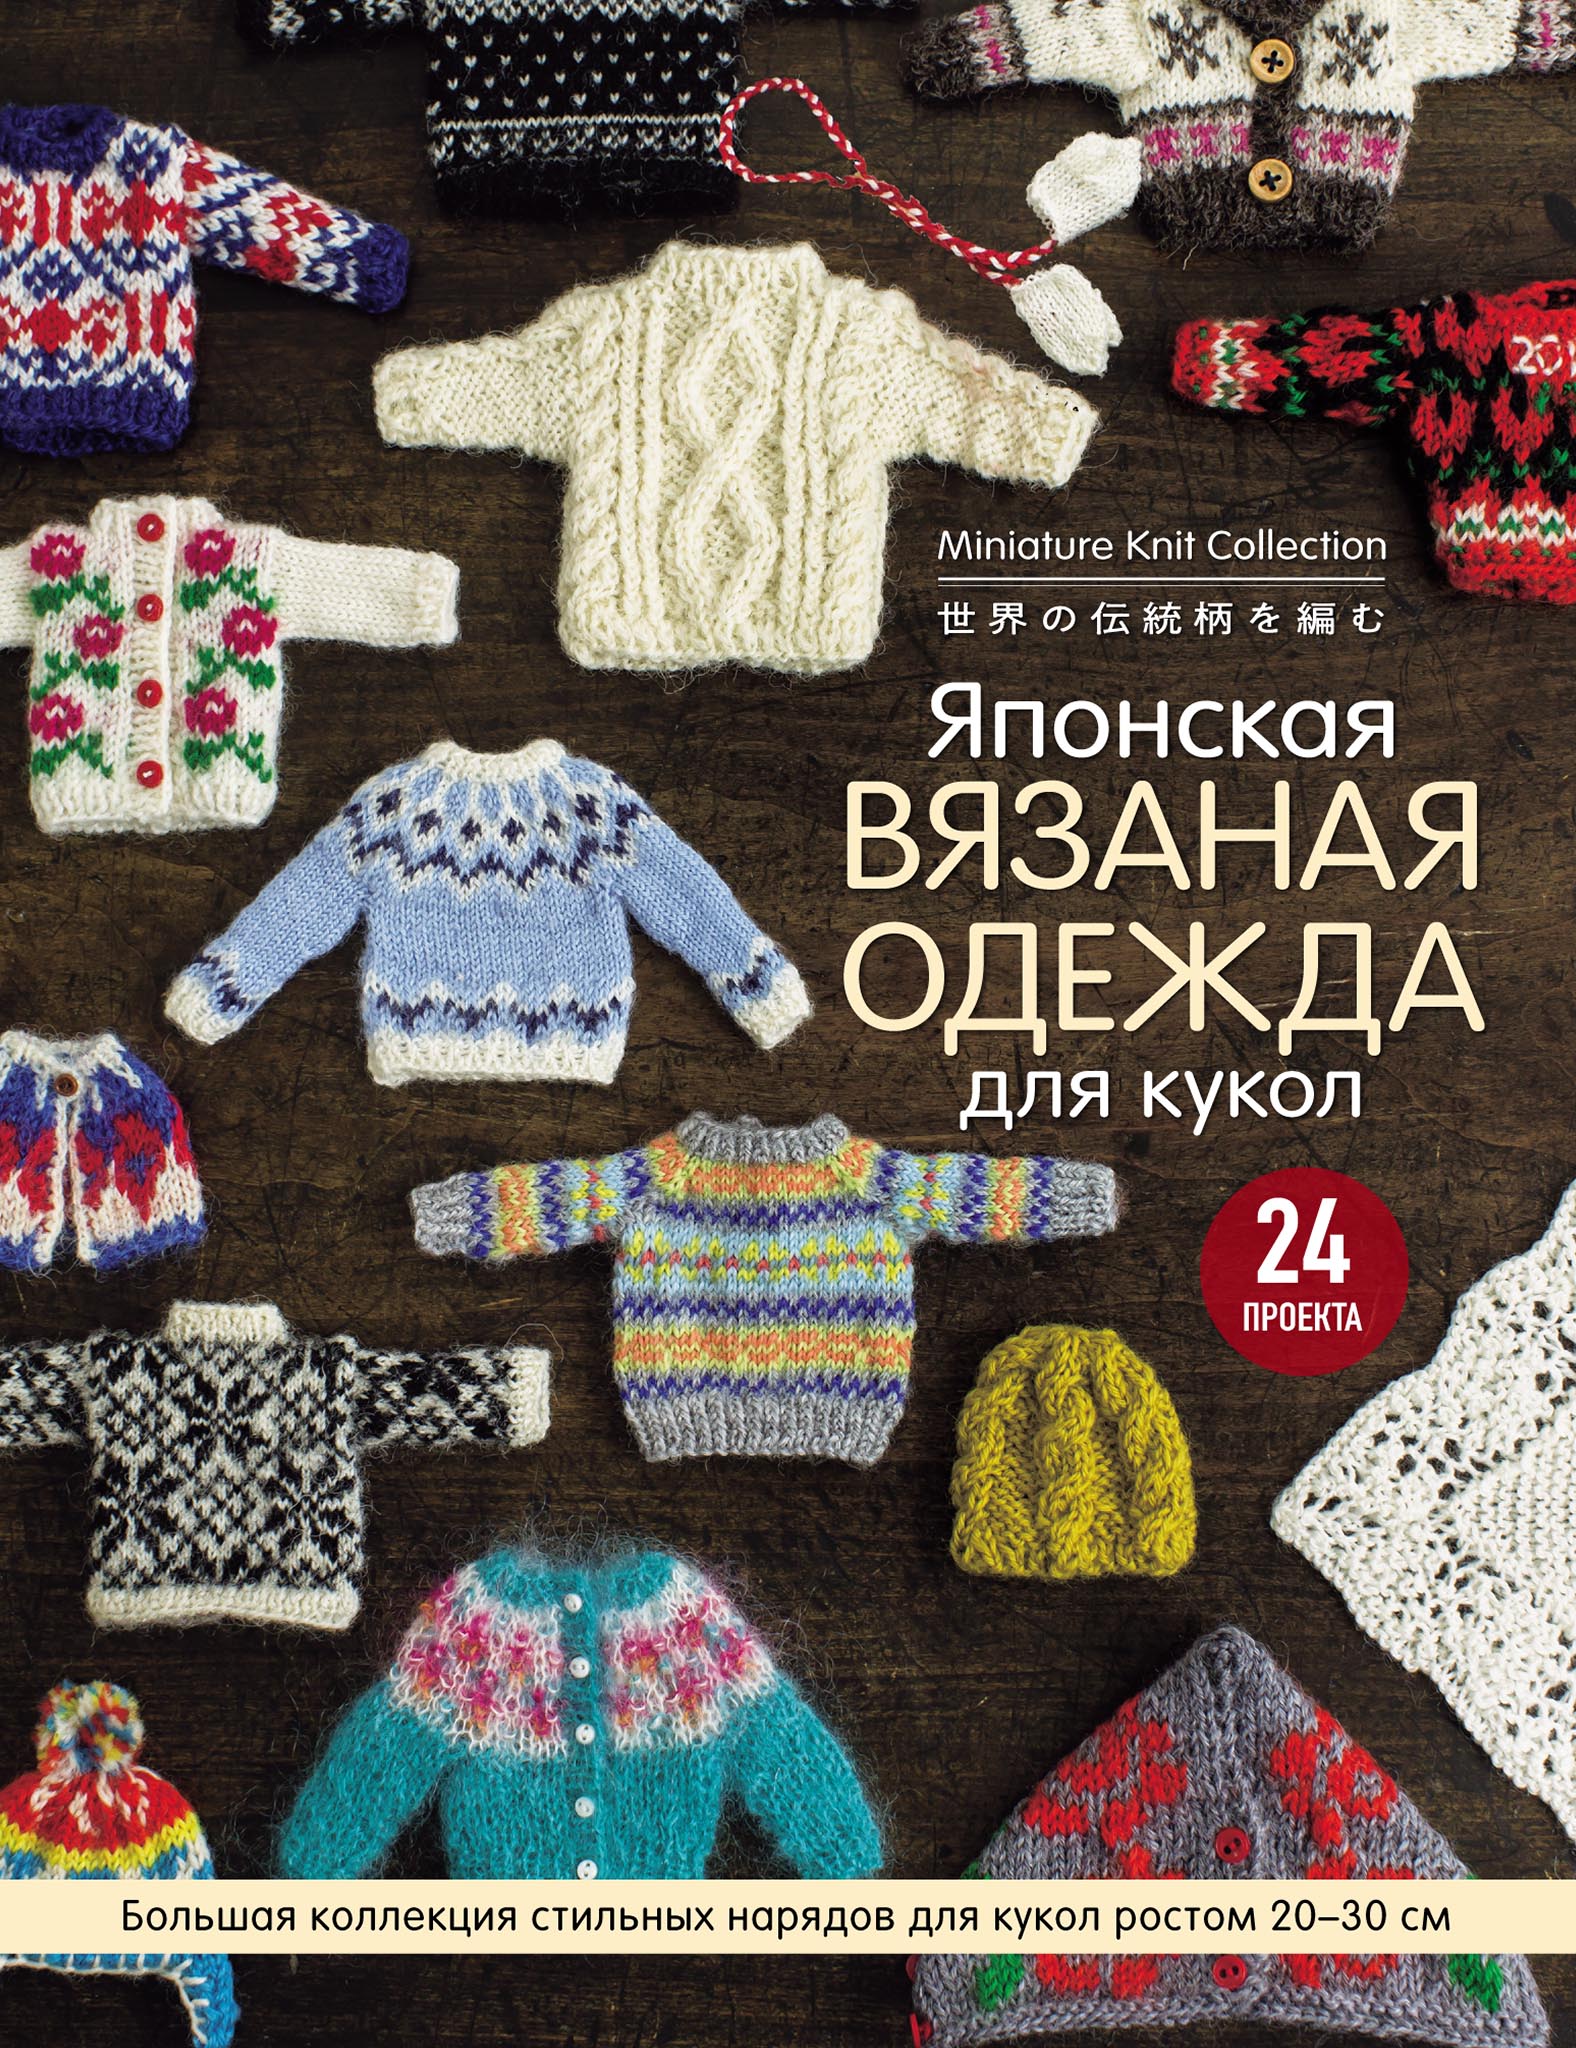 Вязаная одежда для кукол - - купить в Украине на конференц-зал-самара.рф